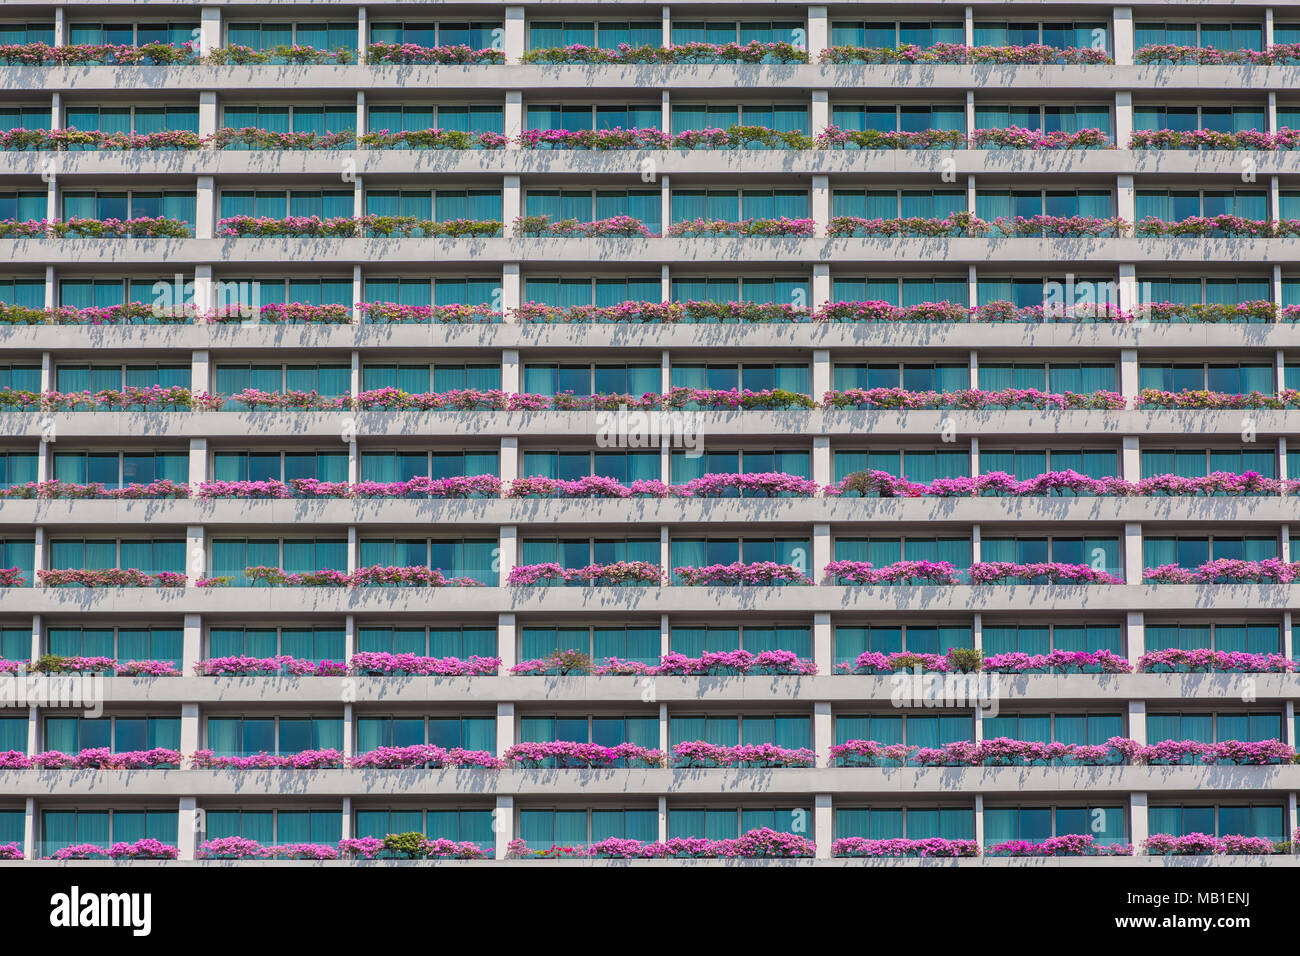 Pinke Bougainvilleas, die auf den Balkonen von Marina Bay Sands gepflanzt wurden, um das Äußere des Hotels zu verschönern. Singapur. Stockfoto